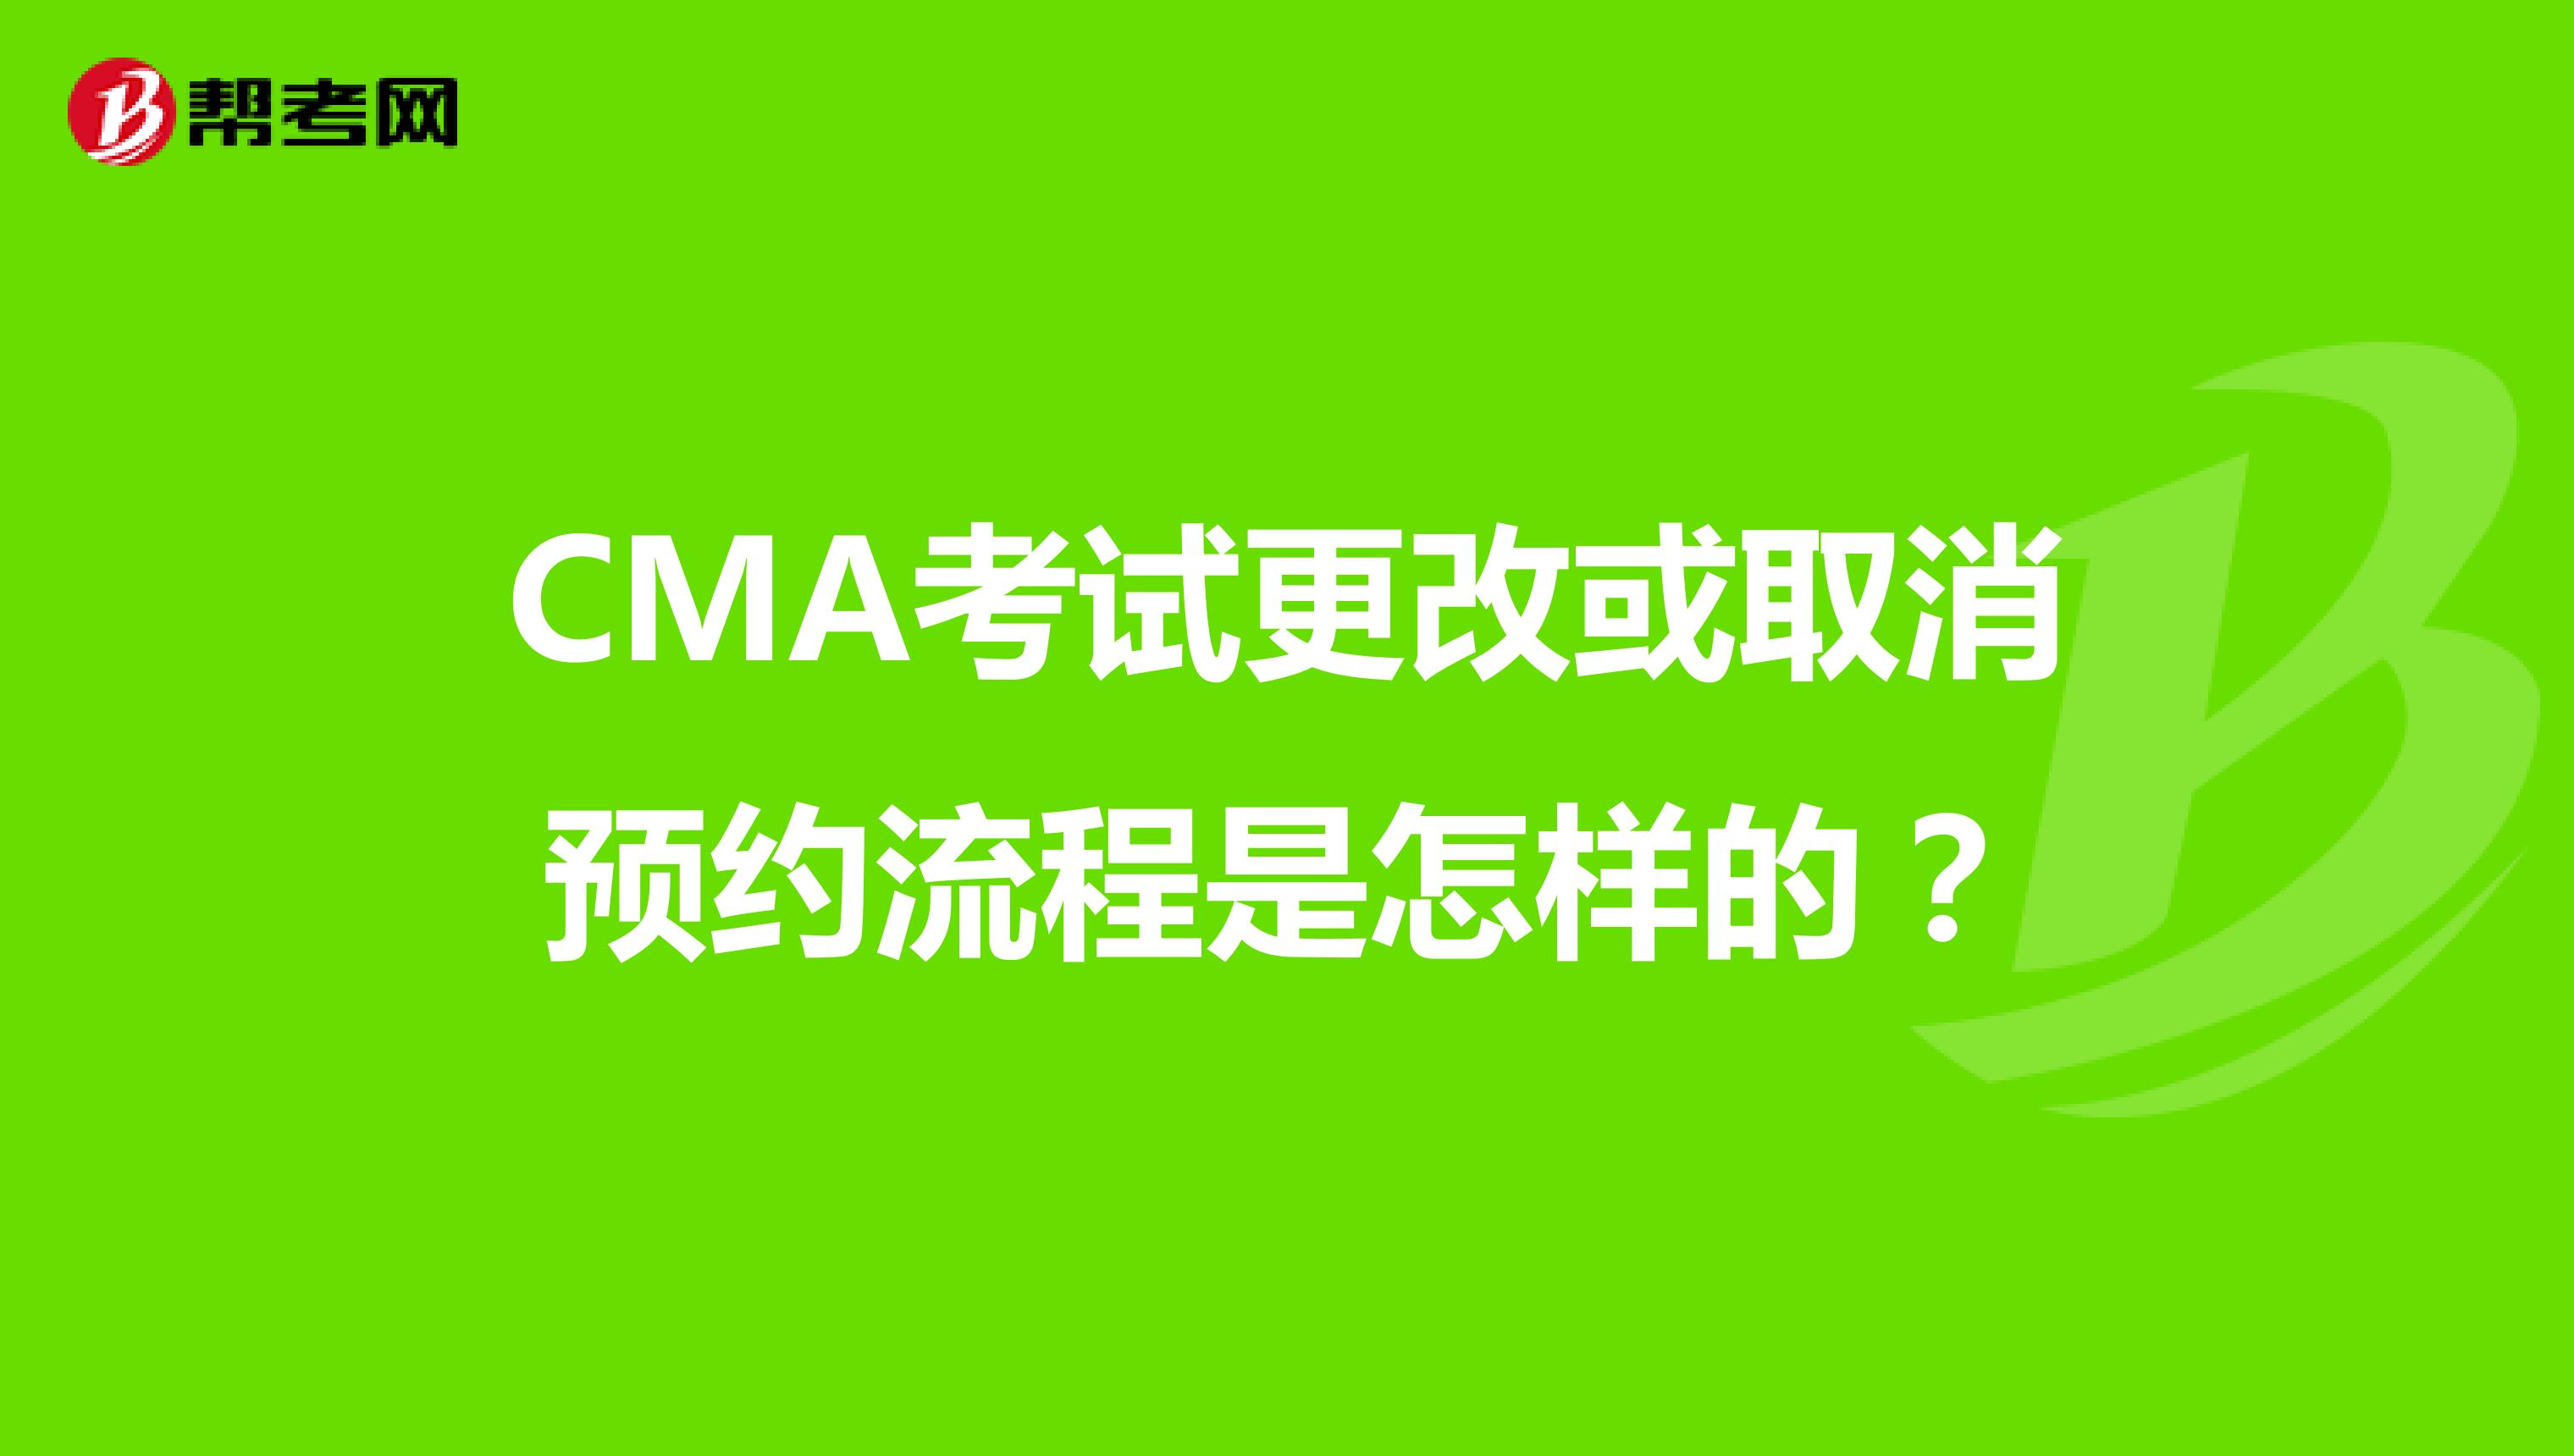 CMA考试更改或取消预约流程是怎样的？